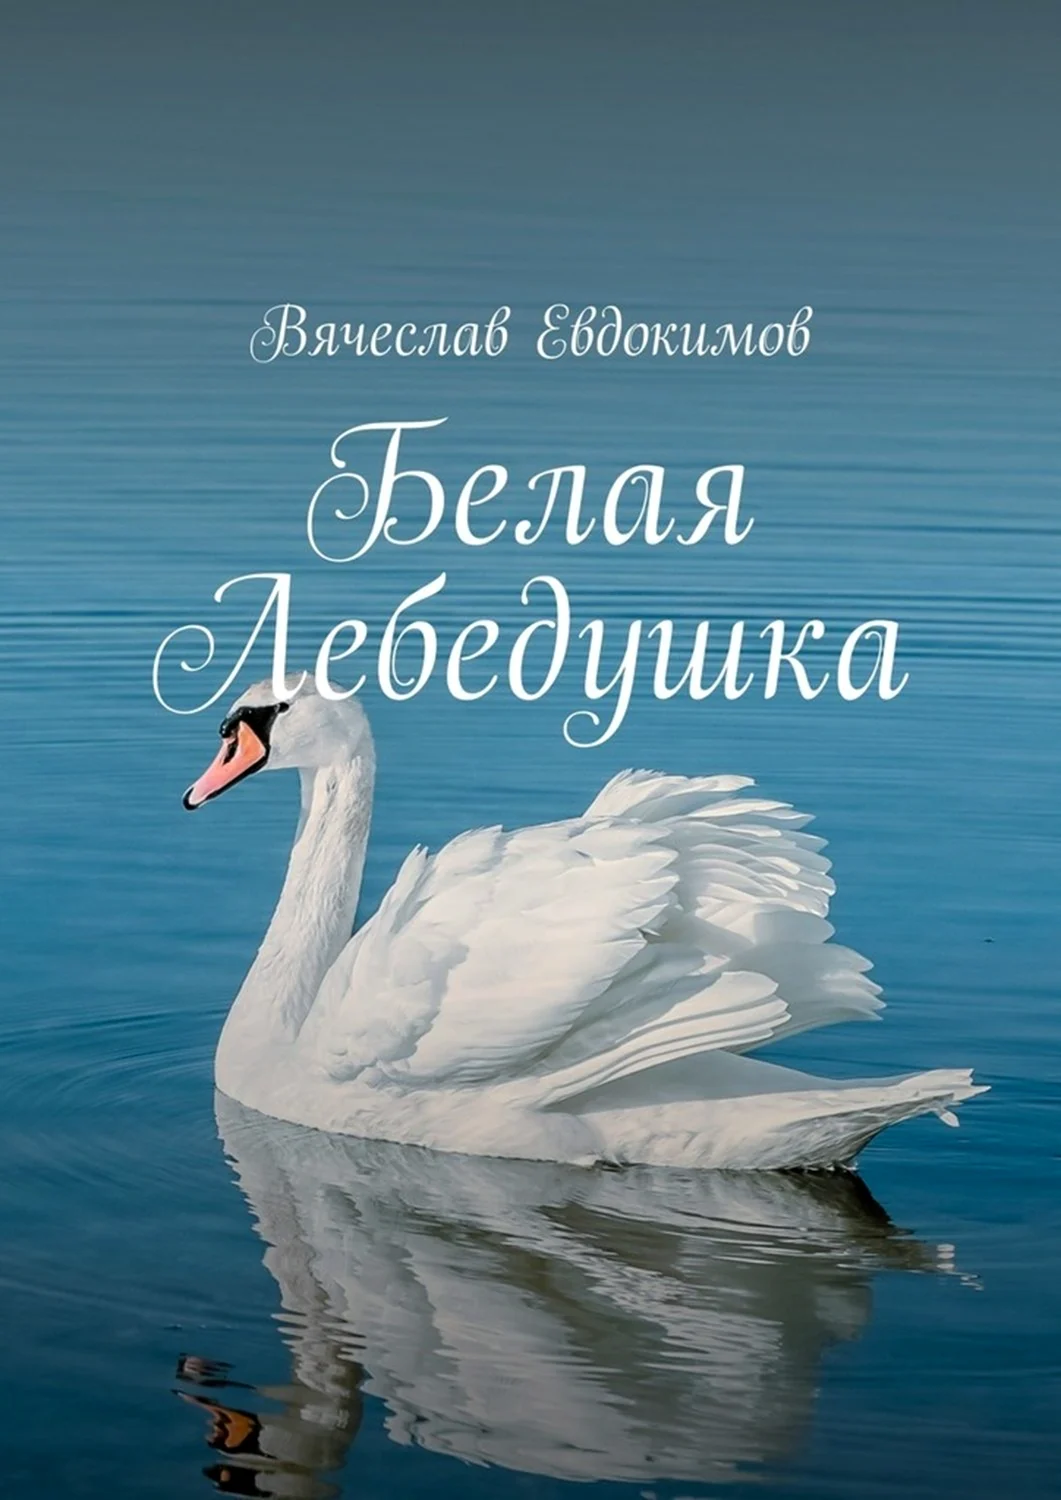 Книга Лебедушка